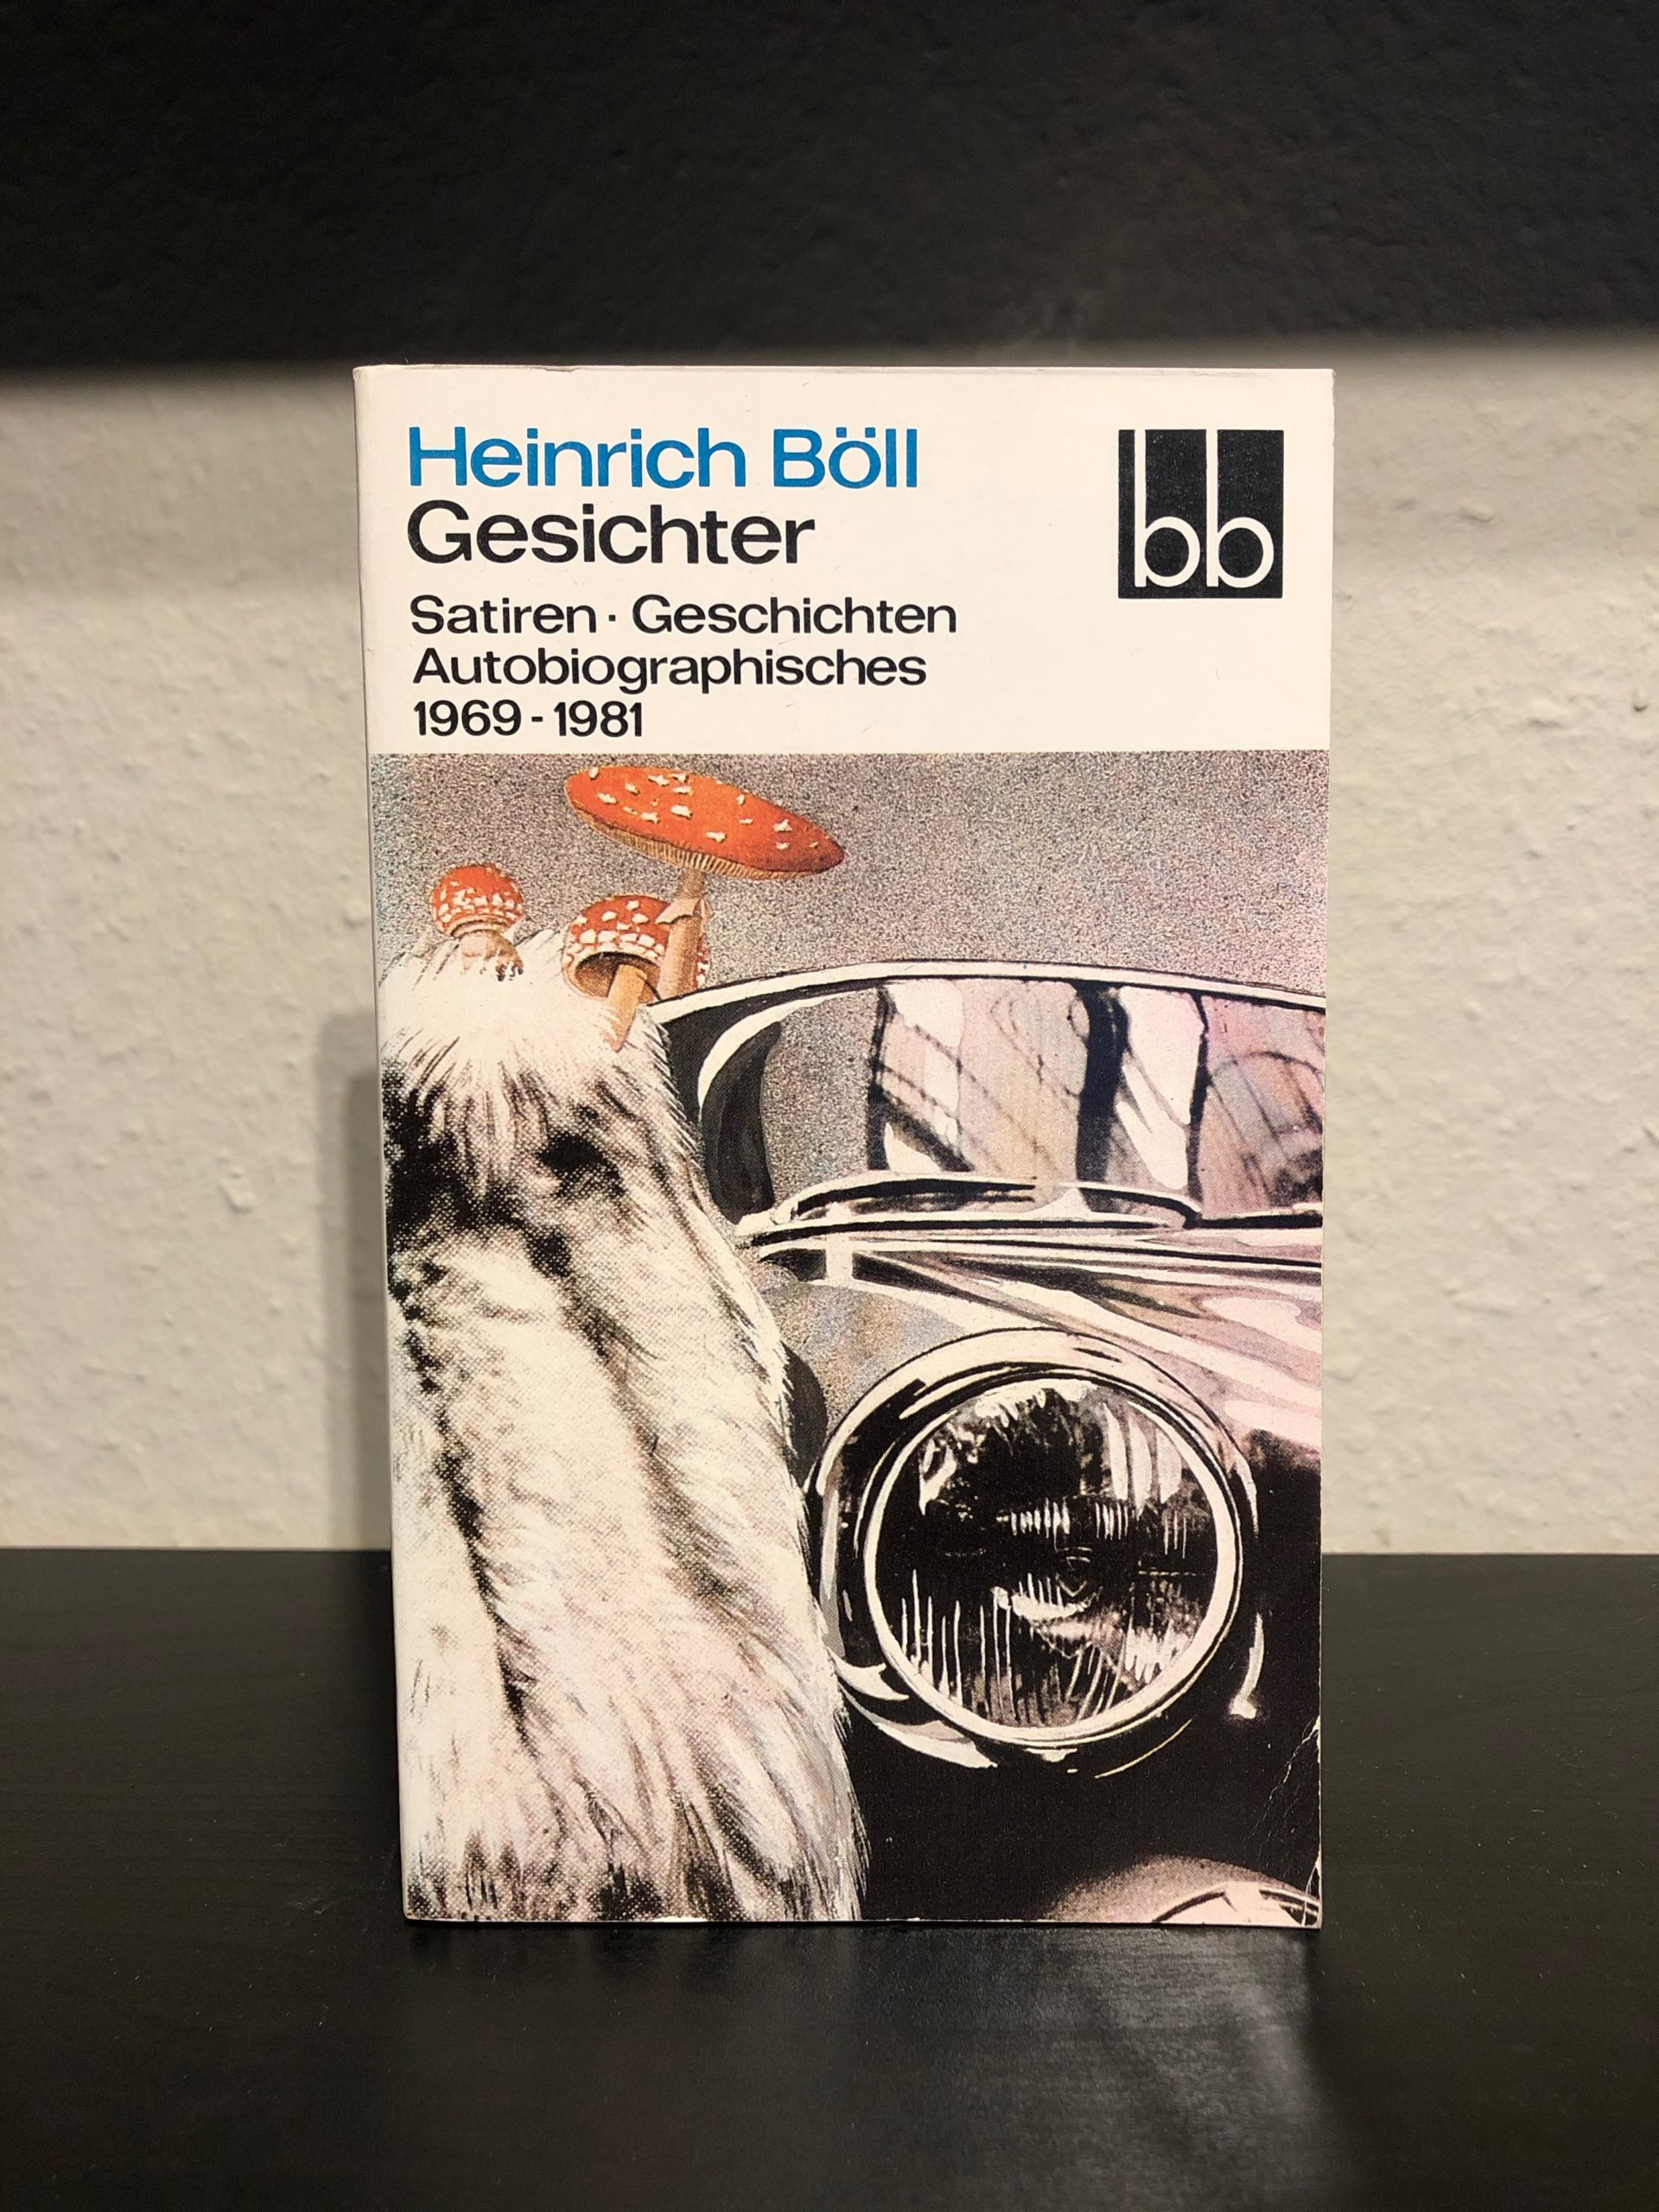 Gesichter - Satiren, Geschichten, Autobiographisches 1969-1981 - Heinrich Böll main image